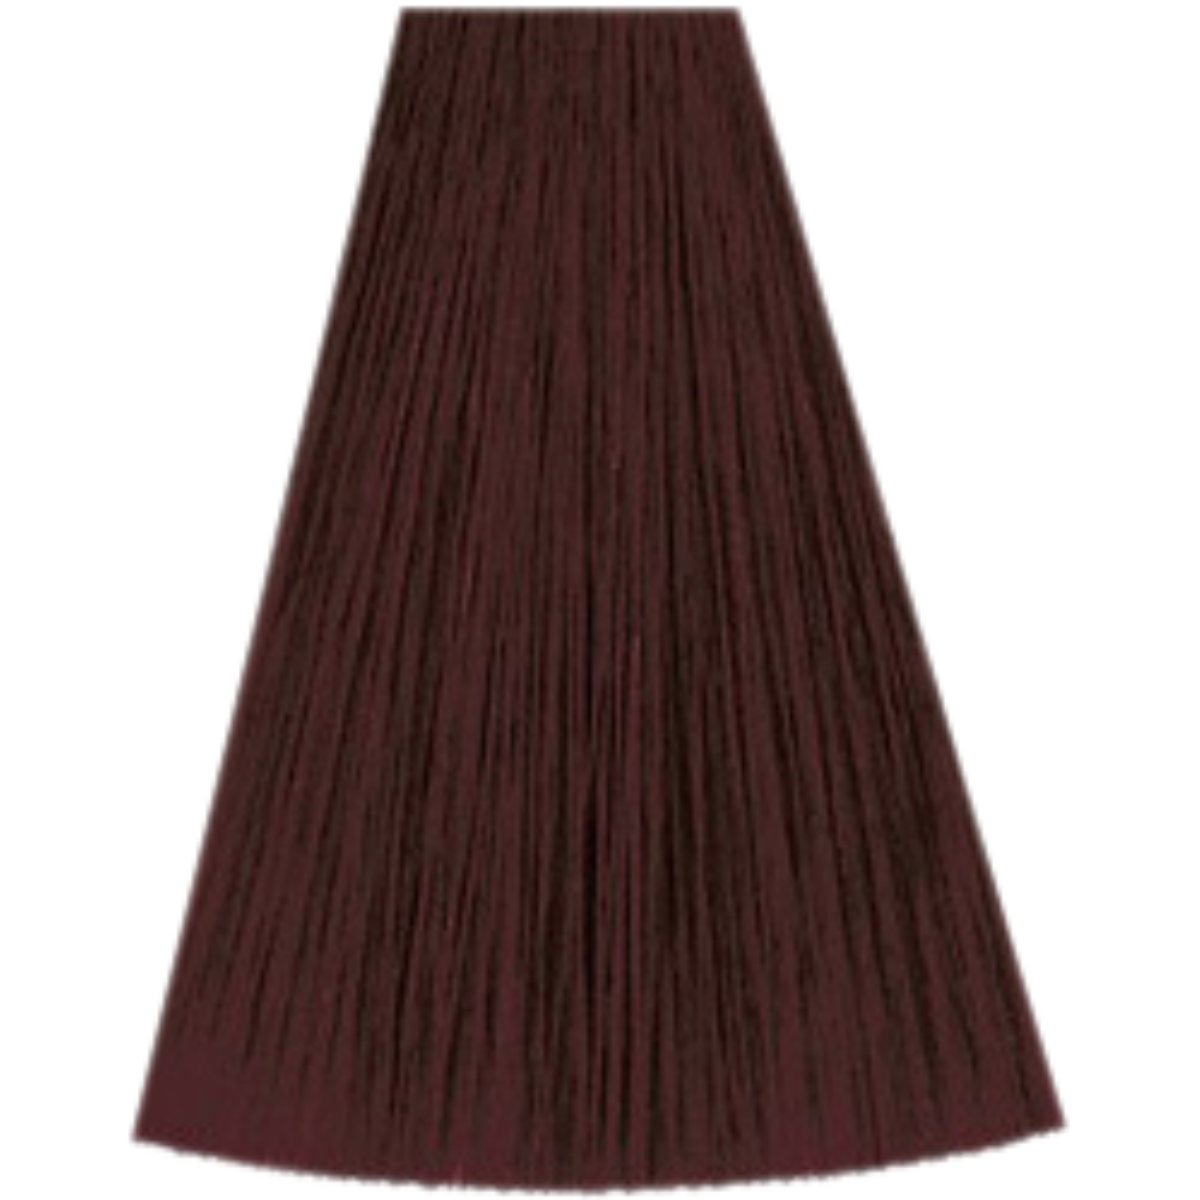 צבע שיער 6/56 DARK BLONDE MAHOGANY VIOLET קאדוס KADUS צבע לשיער 60 גרם